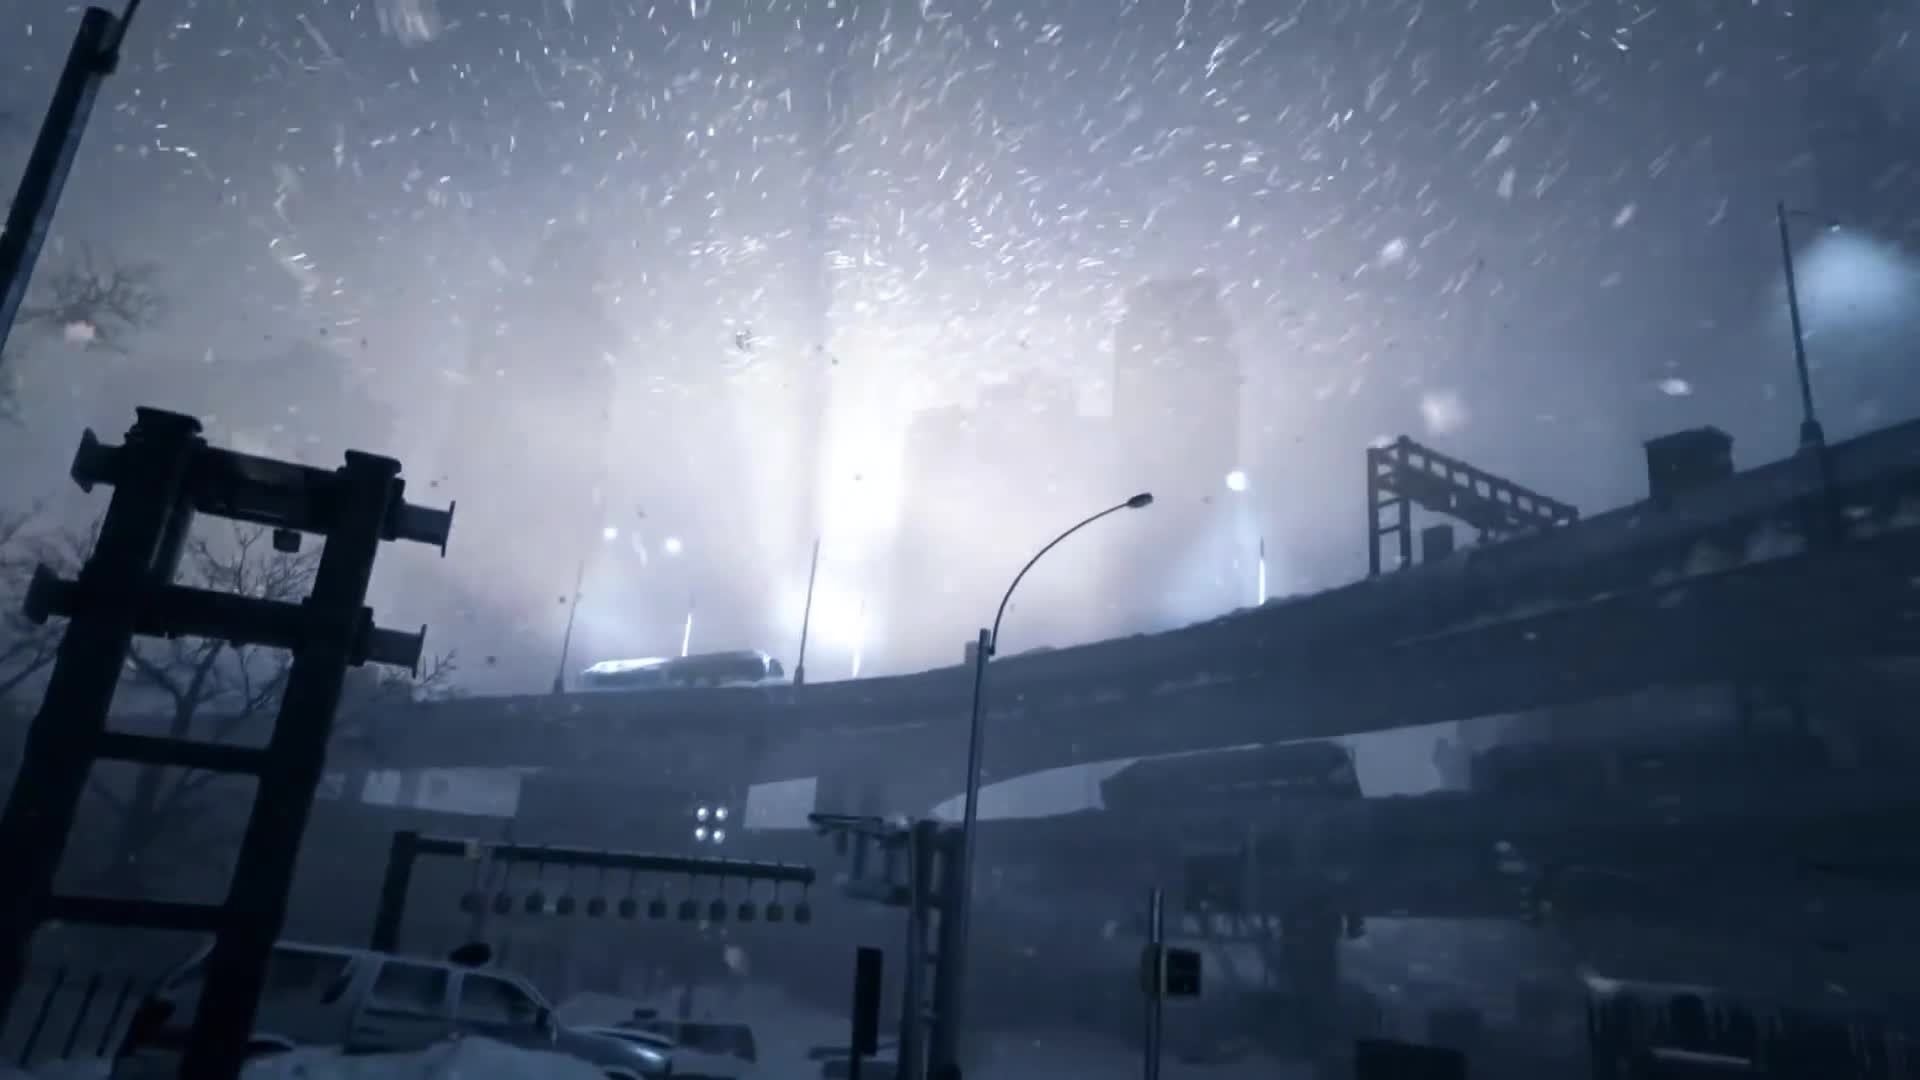 The Division - Survival DLC trailer